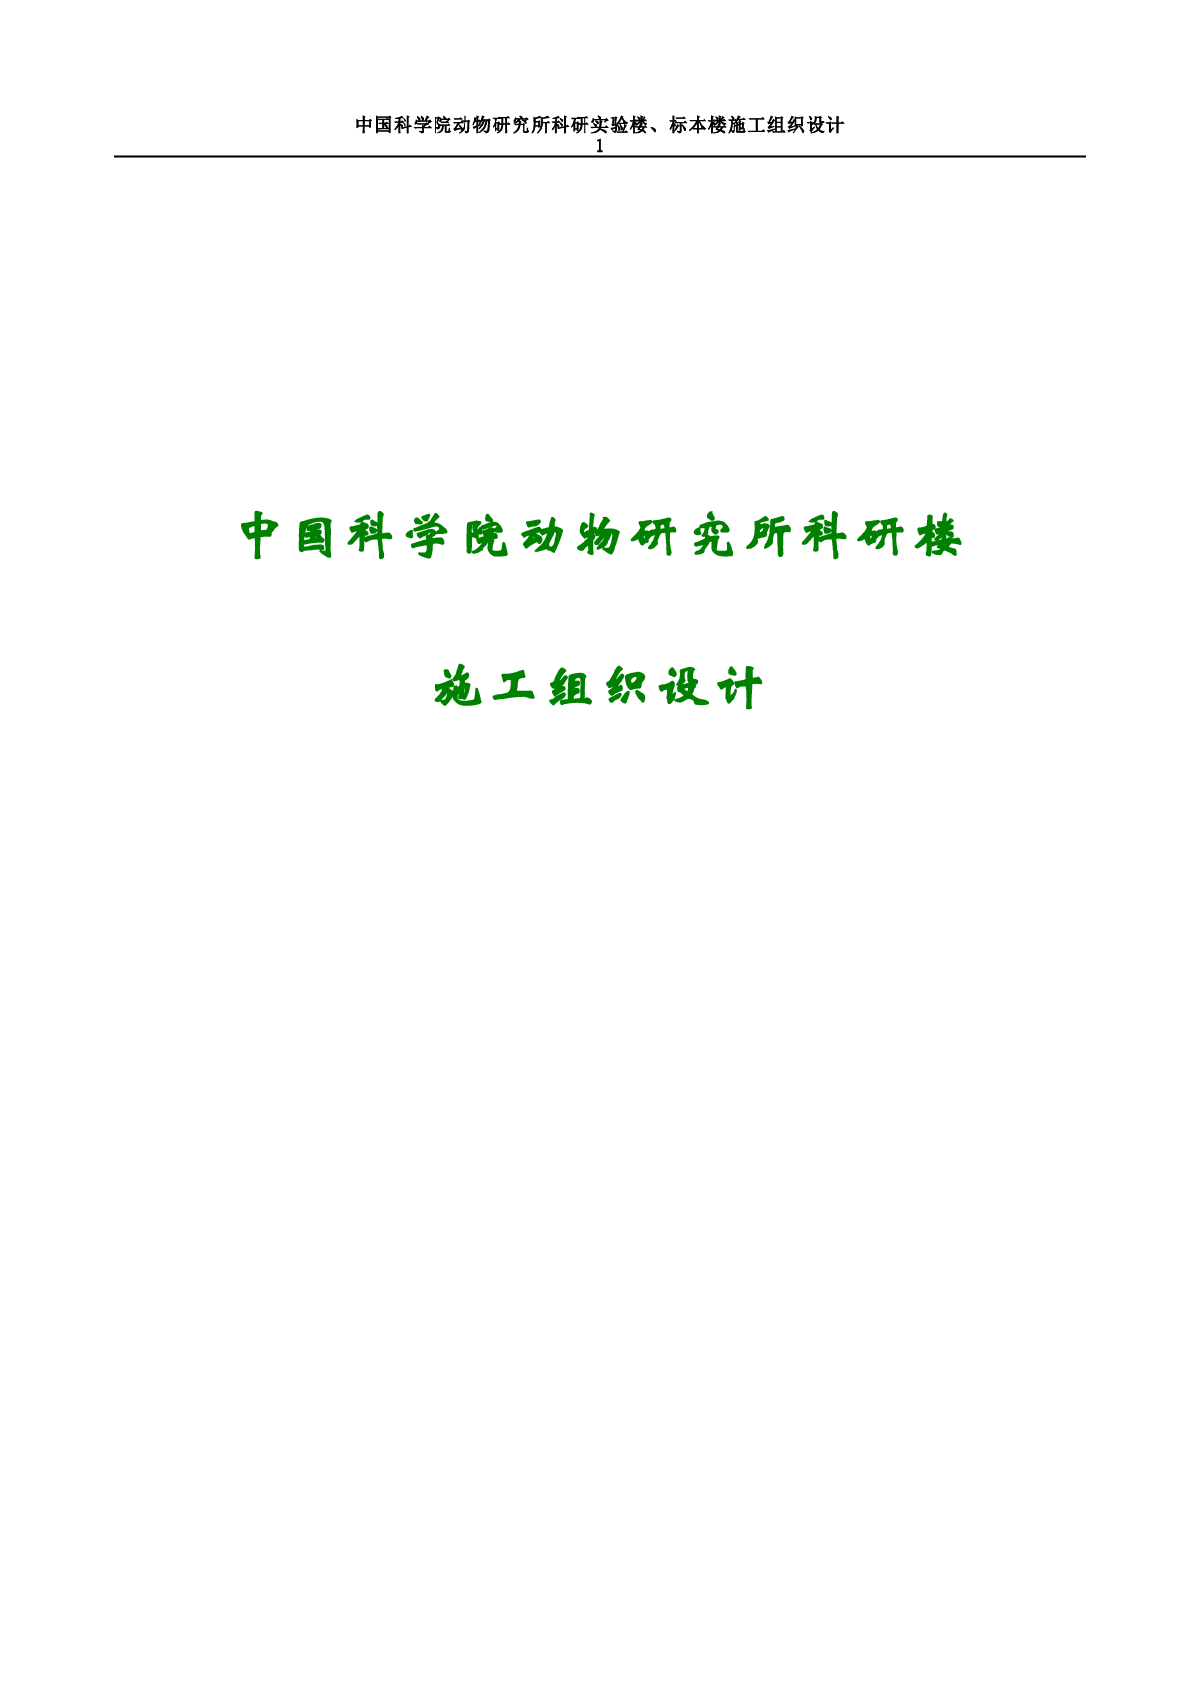 中国科学院动物研究所科研楼施工组织设计